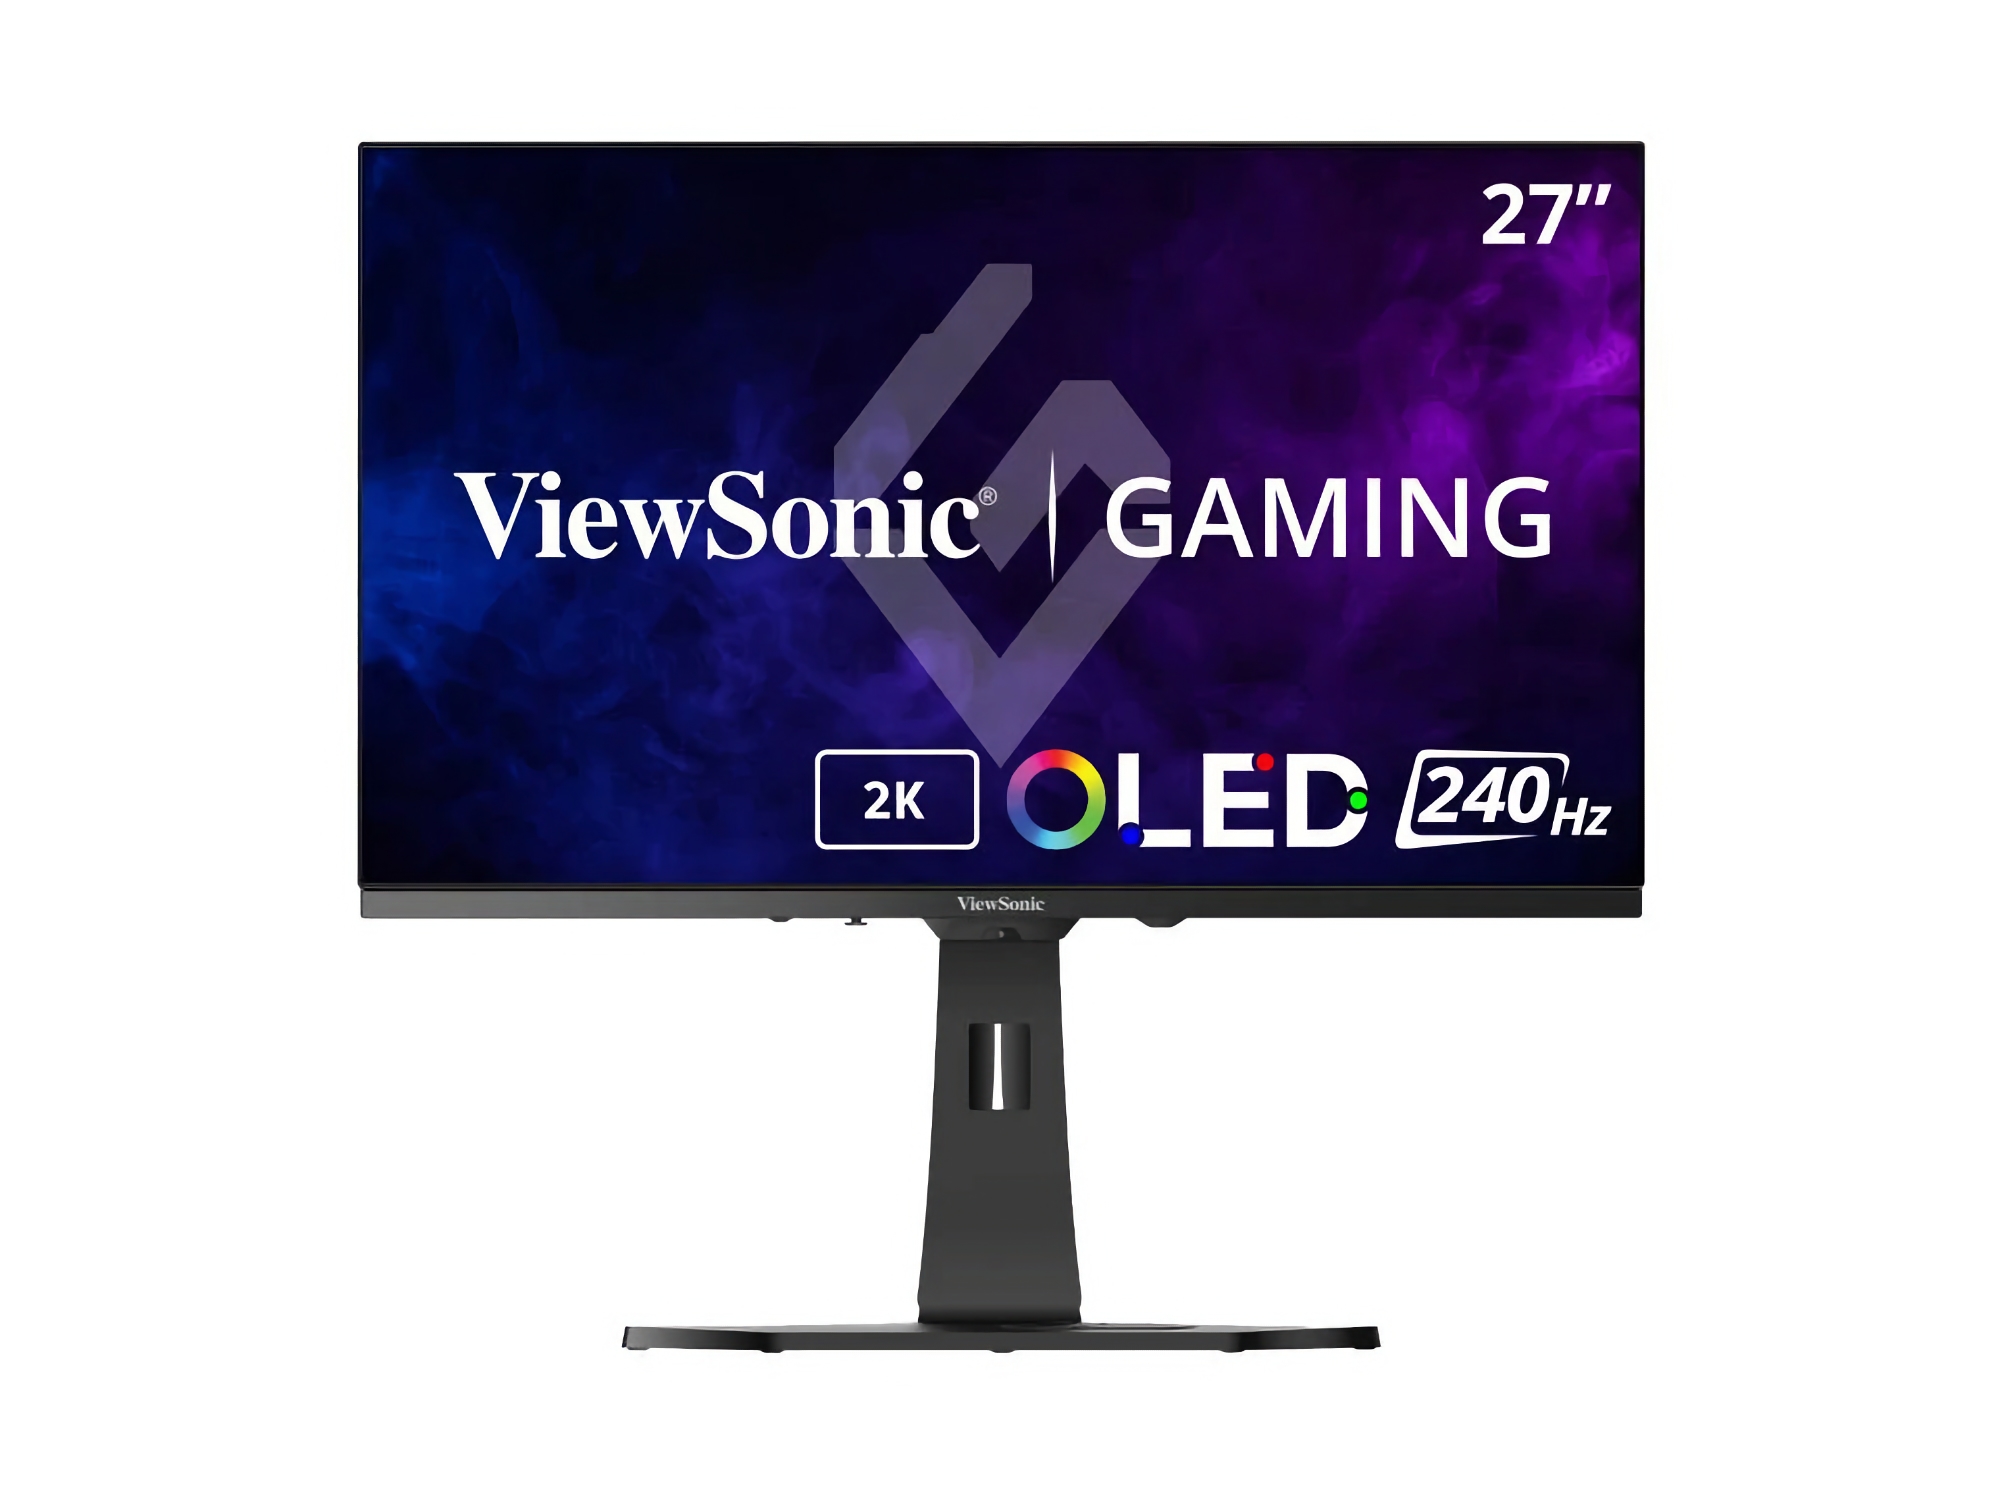 ViewSonic представила XG272-2K: ігровий монітор з OLED-екраном на 240 Гц